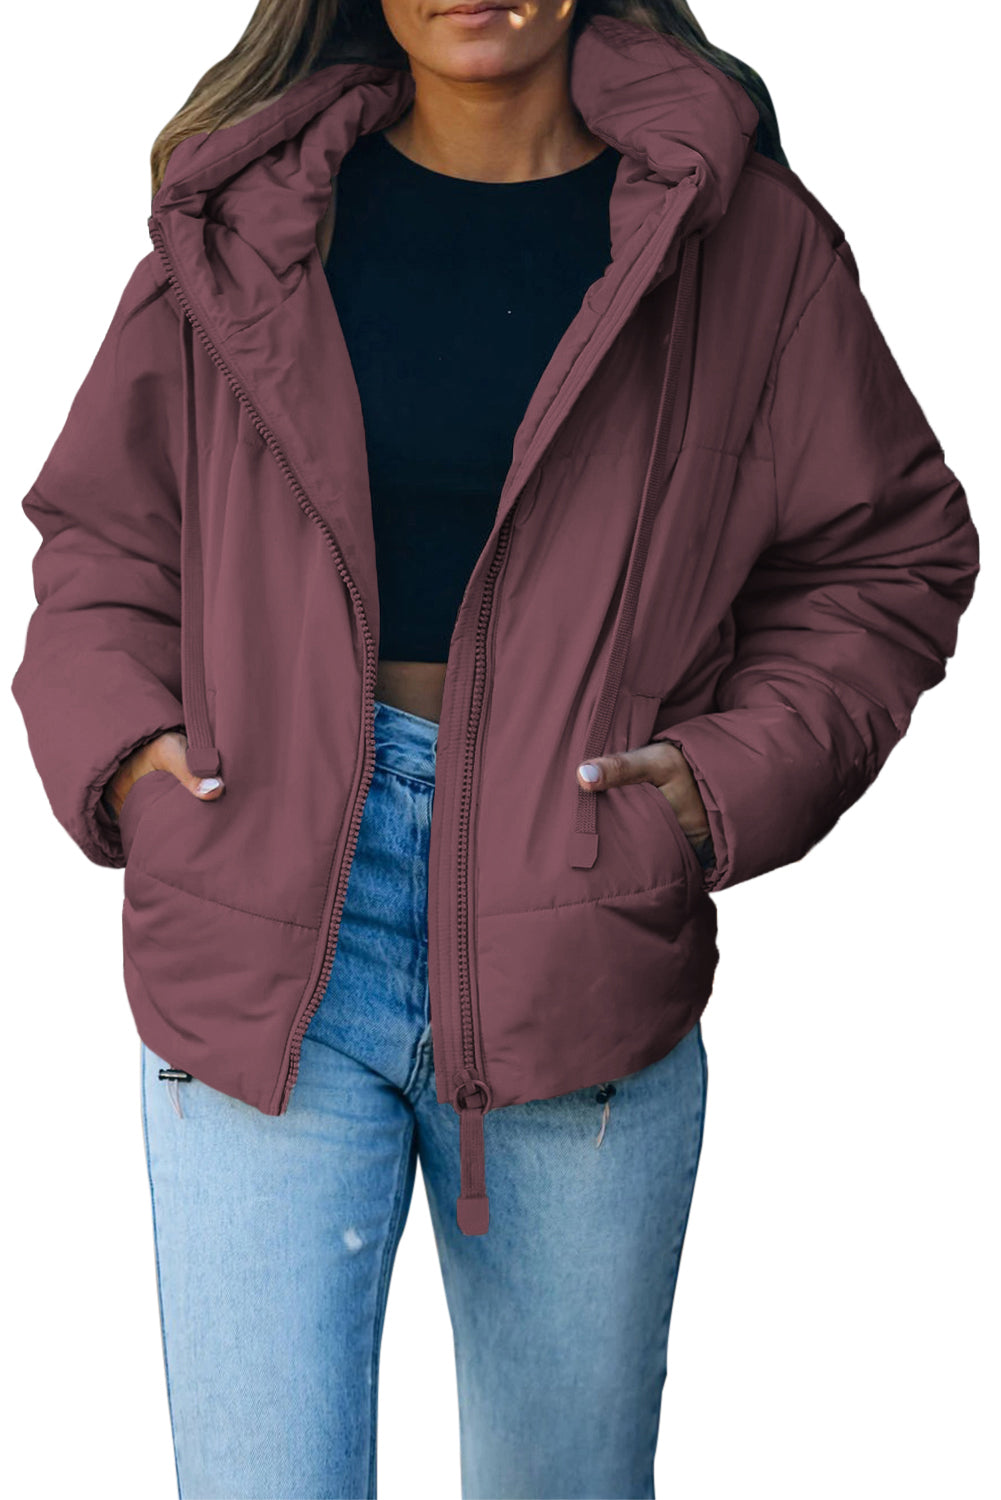 LC856045-8-S, LC856045-8-M, LC856045-8-L, LC856045-8-XL, LC856045-8-2XL, Purple Winter Coats for Women Outdoor Zipper Hooded Coat Outwear with Pockets